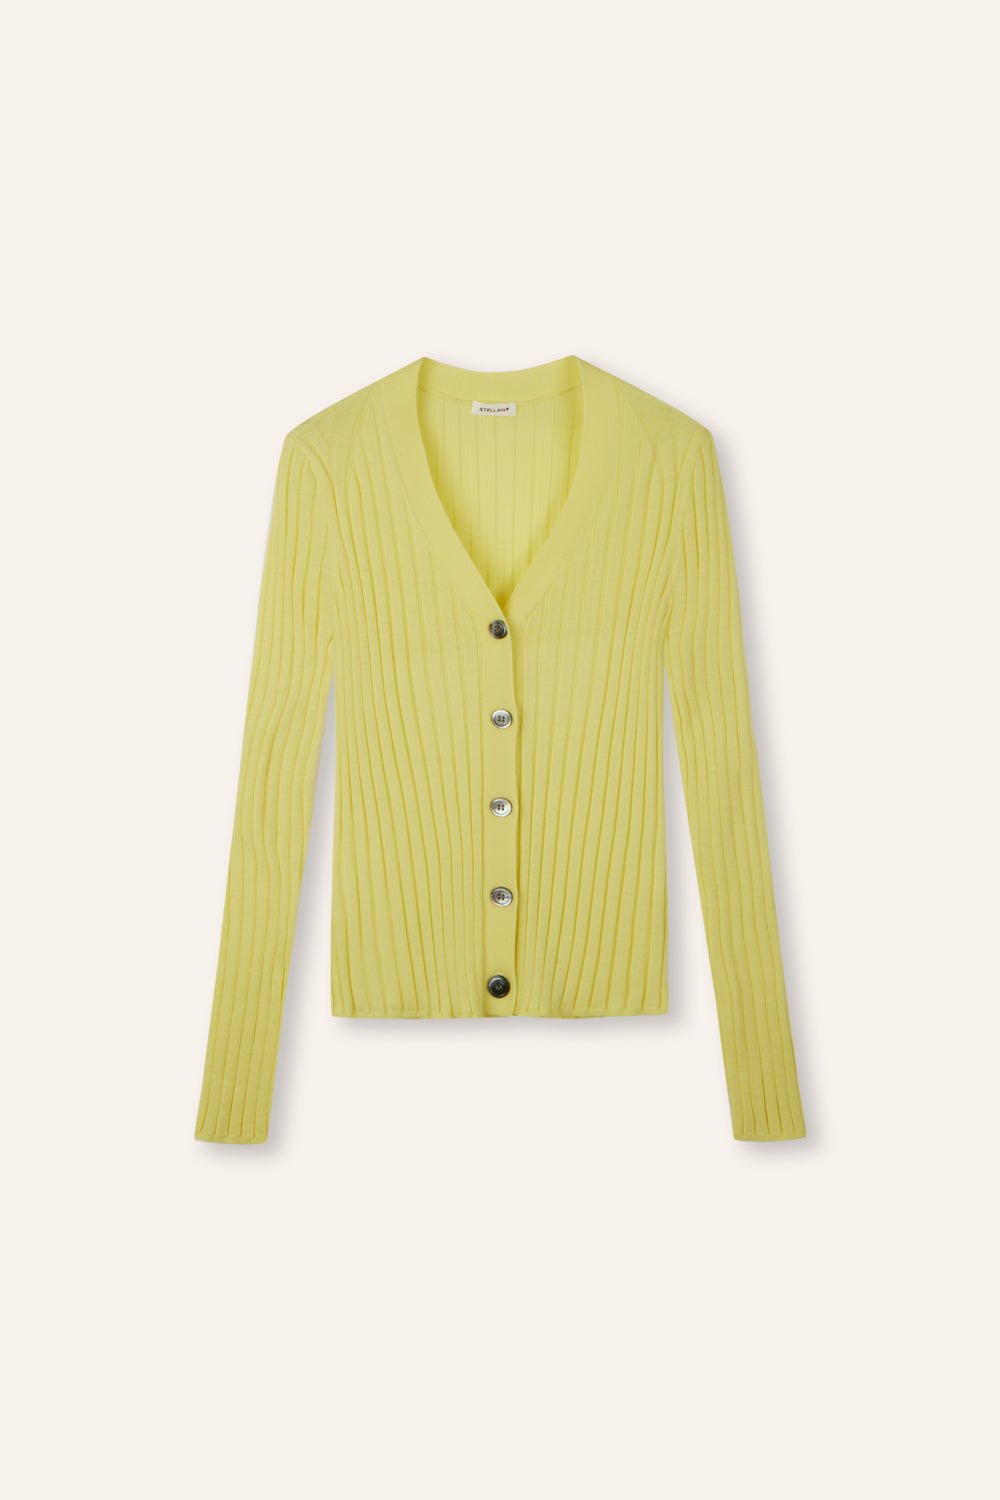 WENDY merino wool slim-fit cardigan (Yellow) - STELLAM